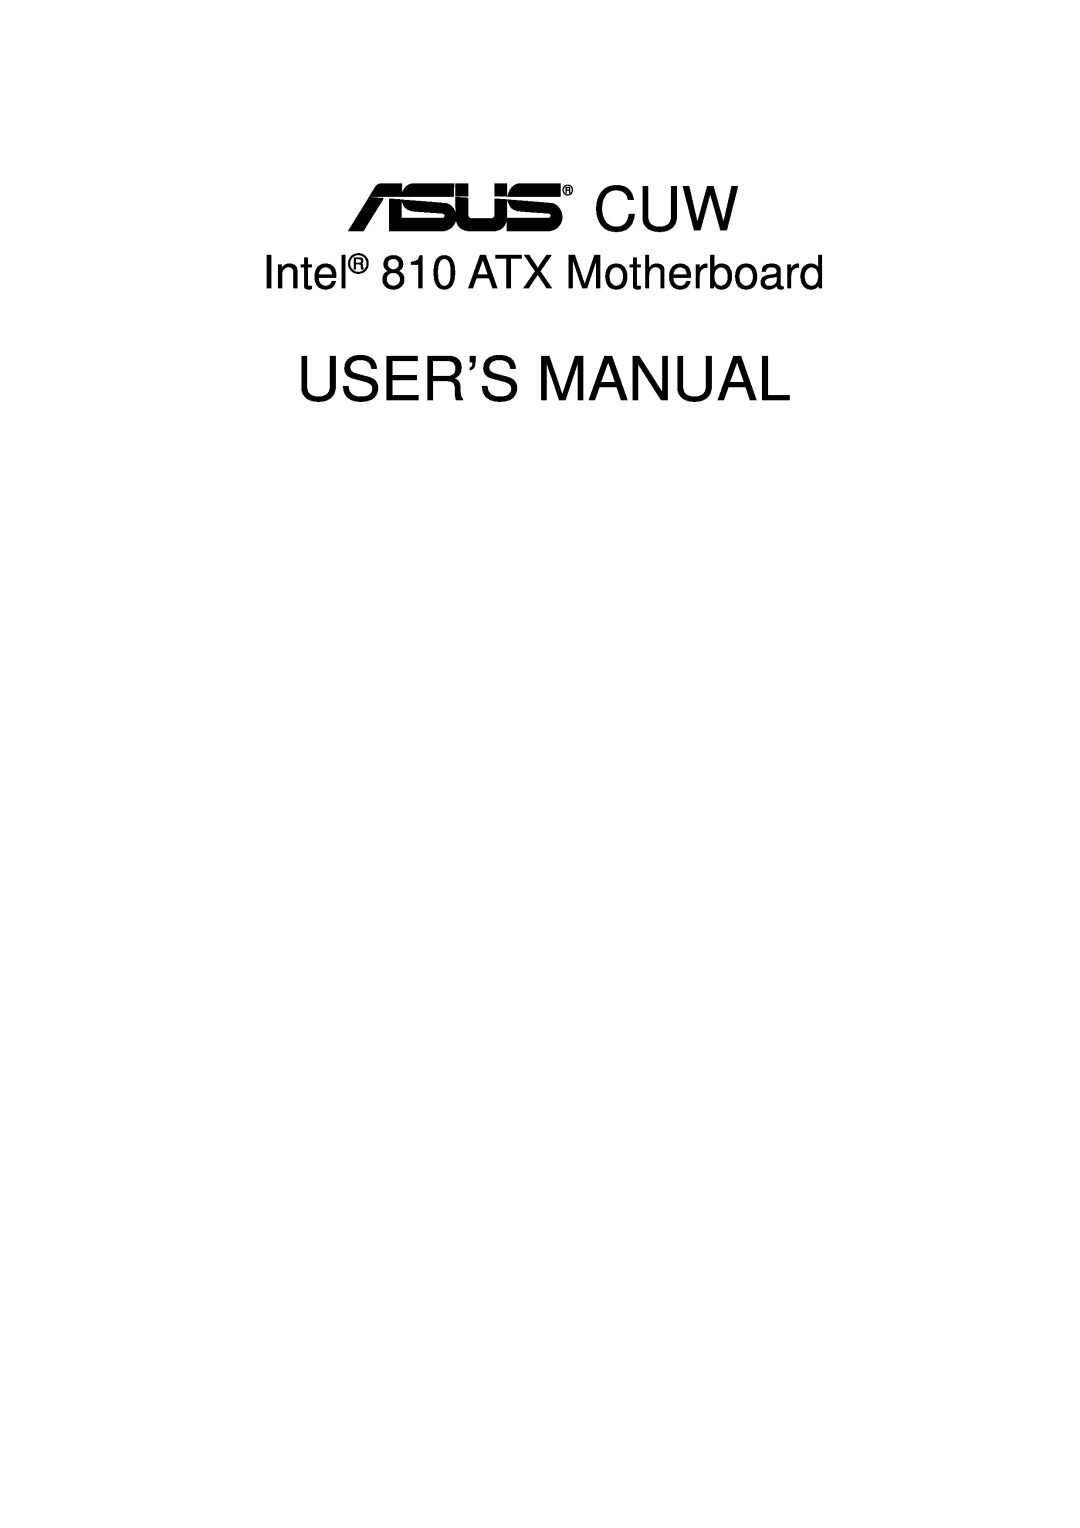 Asus user manual Intel 810 ATX Motherboard, User’S Manual 